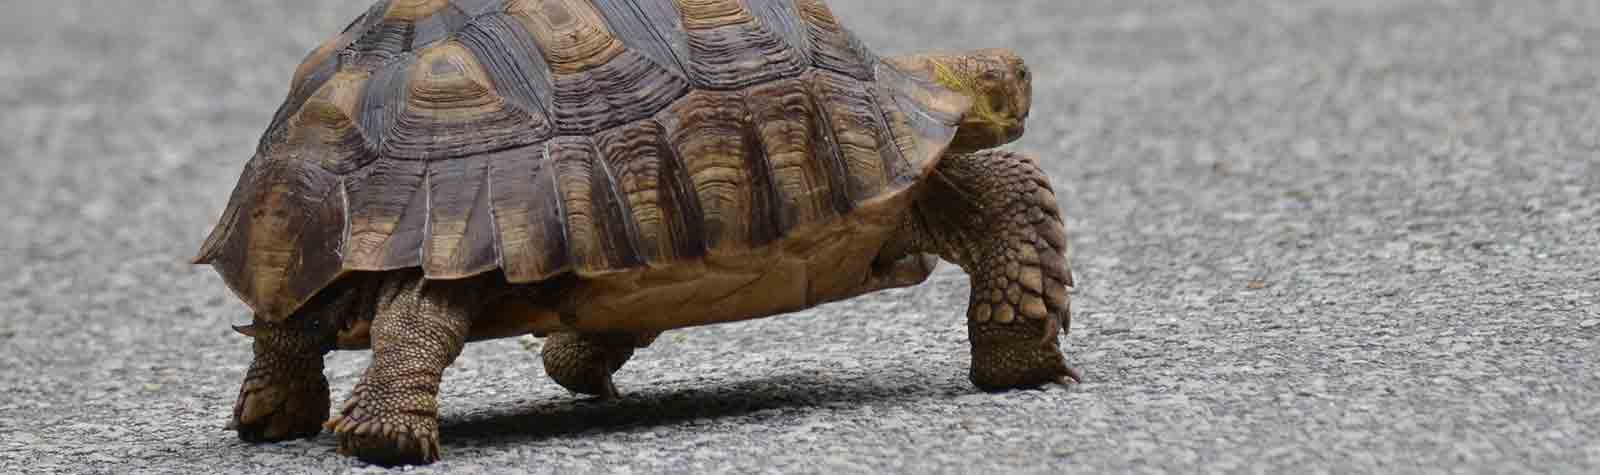 Go slow; like a turtle